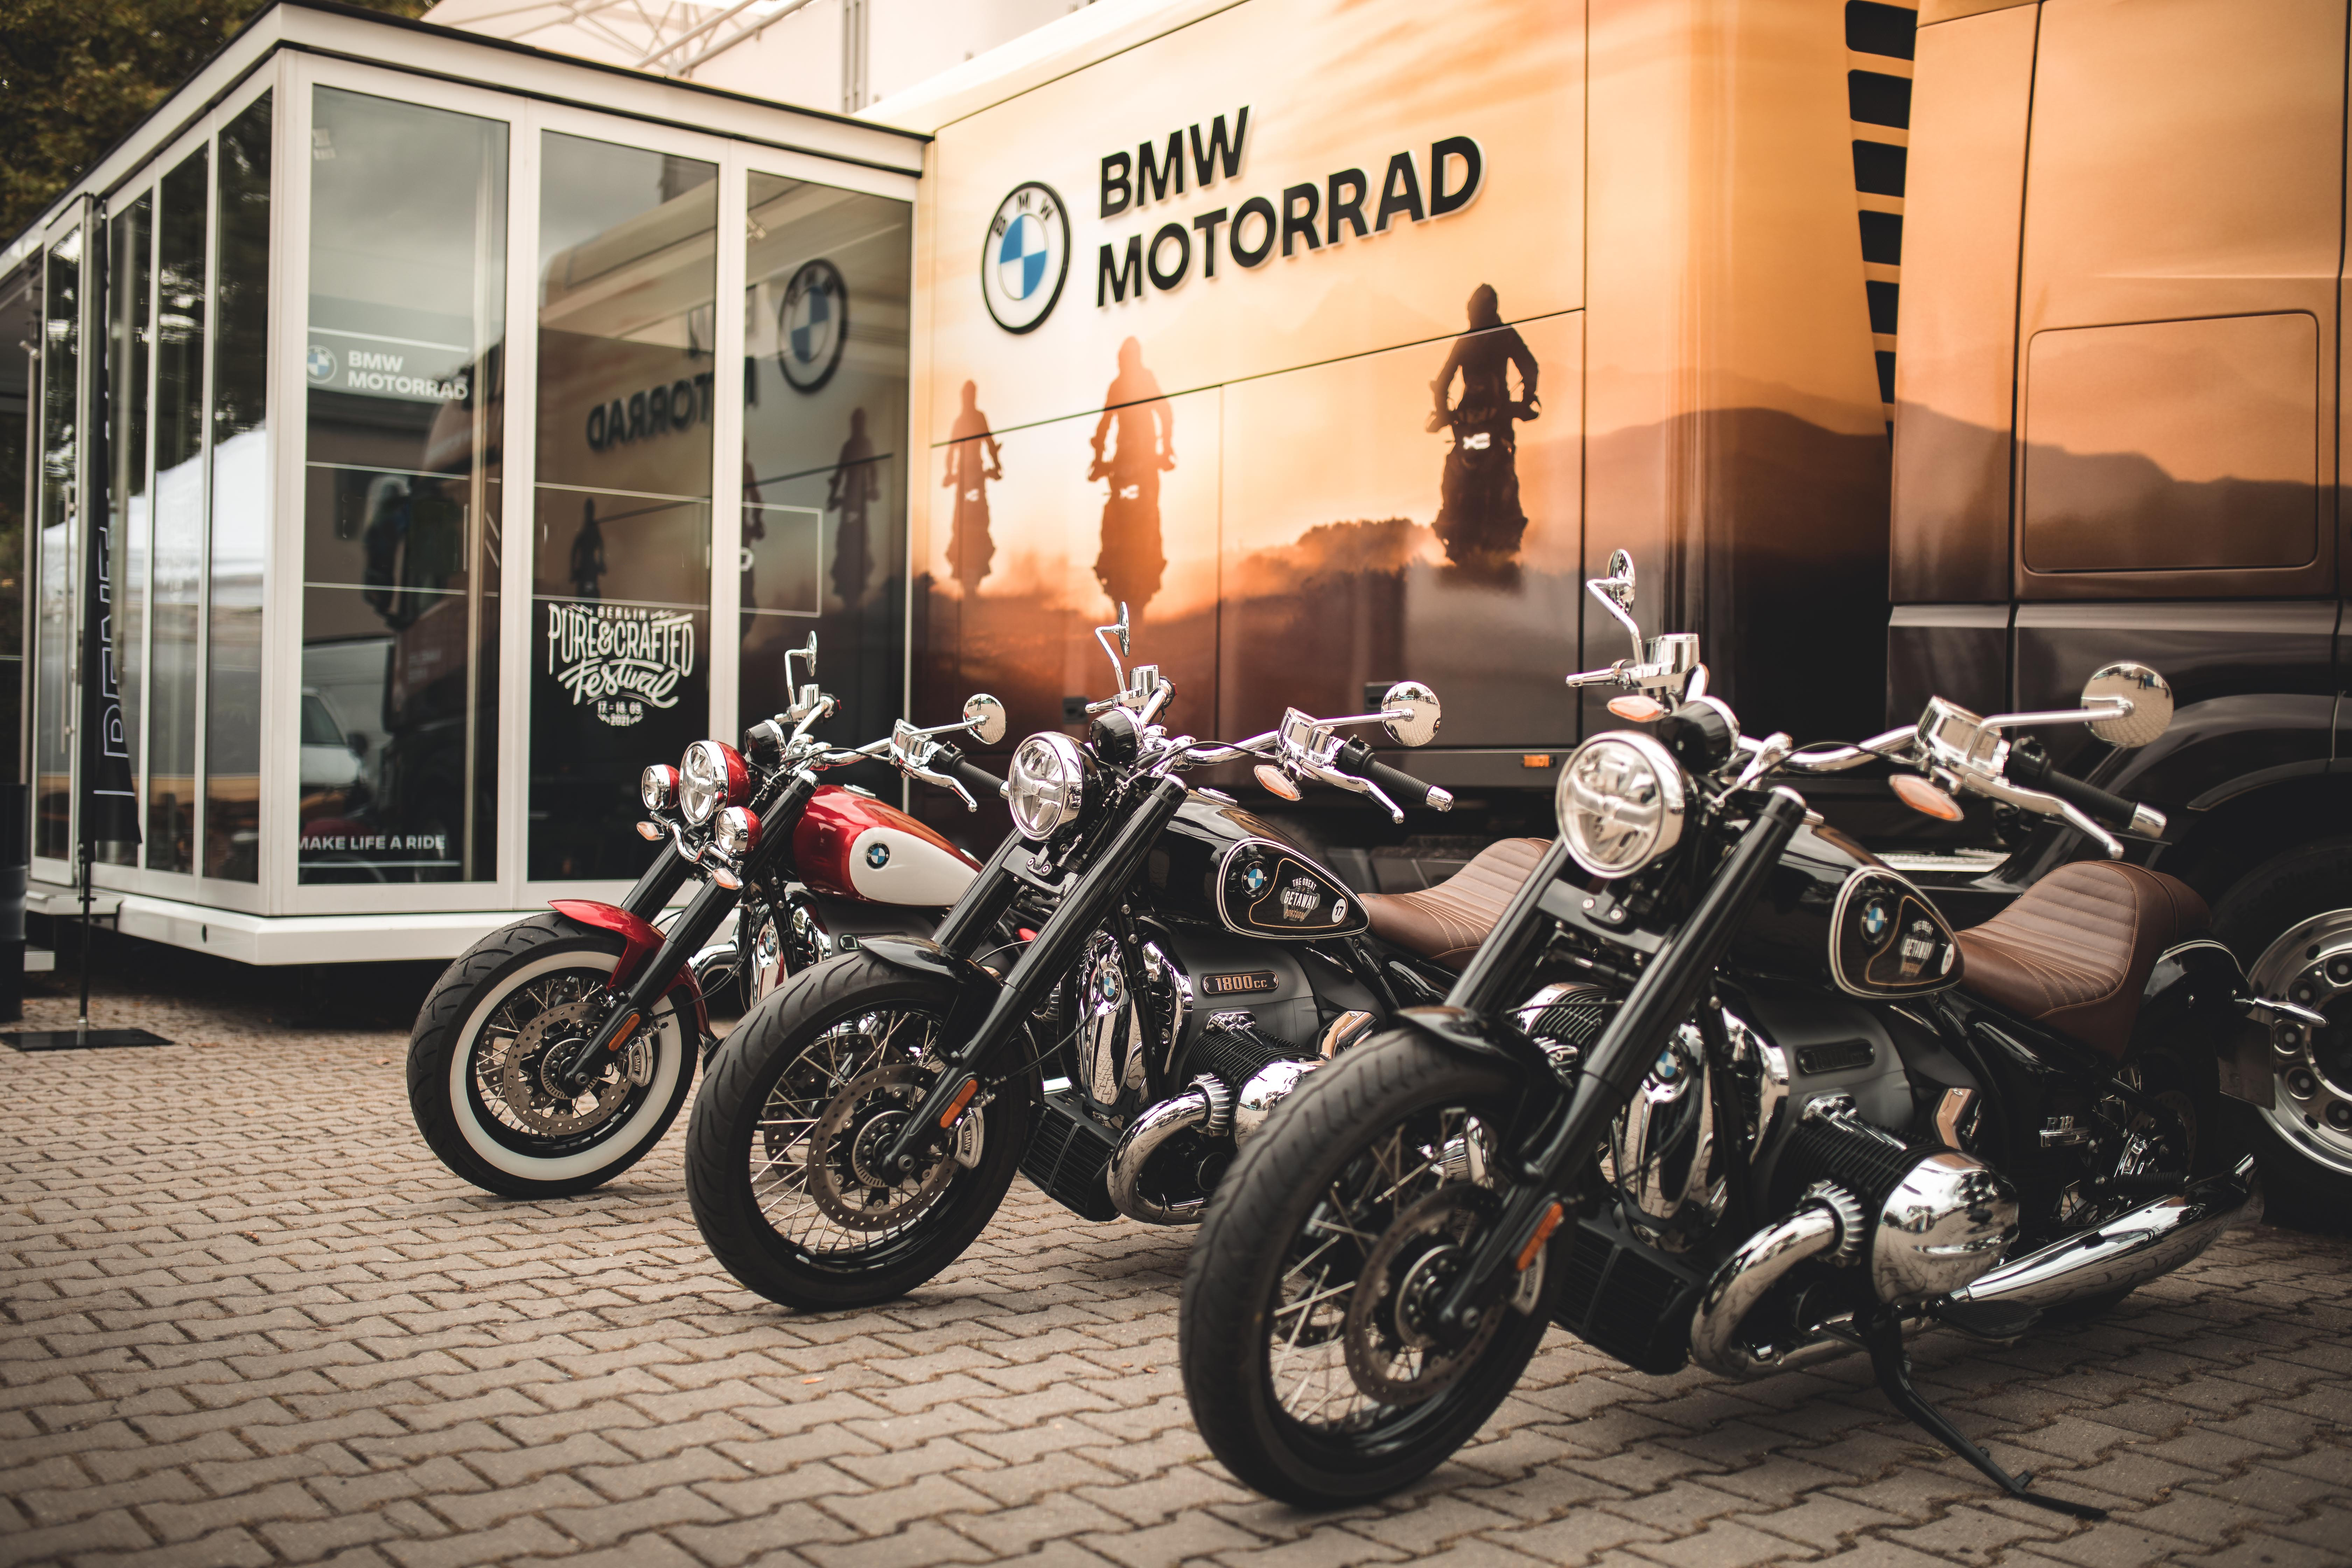 Con la Settimana dell’usato BMW Motorrad dal 7 al 15 ottobre, passaggio di proprietà omaggio su stock in pronta consegna